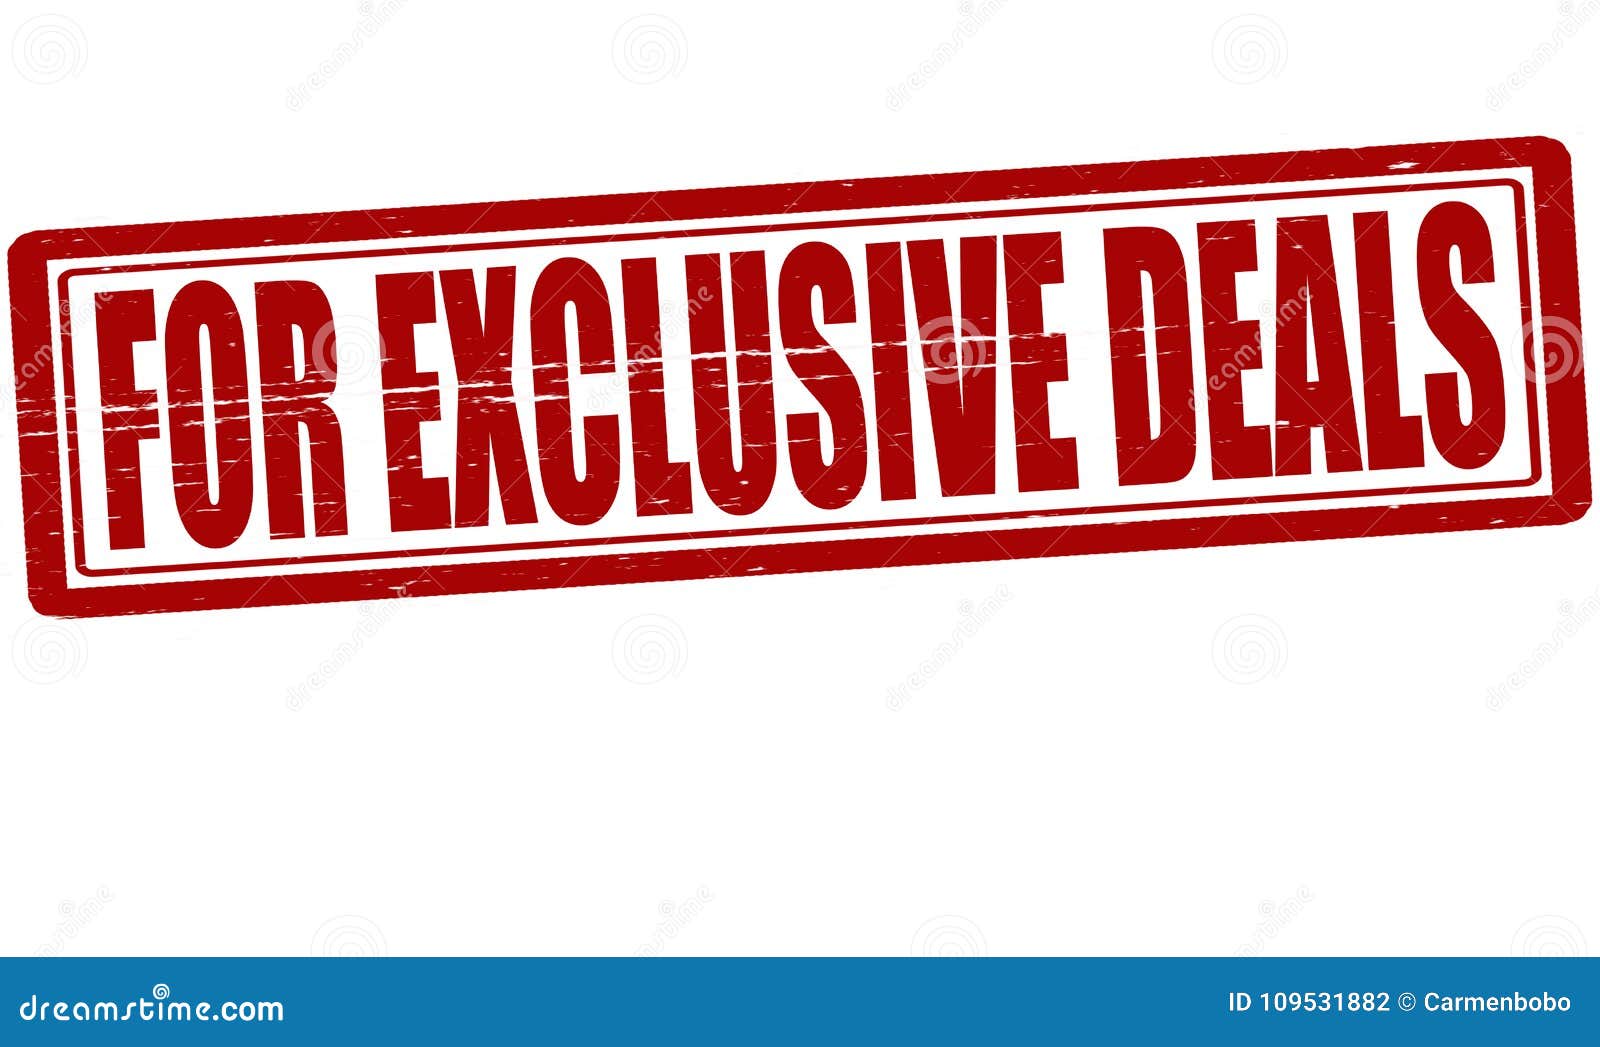 Exclusive Deals Stock Illustrations – 2,970 Exclusive Deals Stock